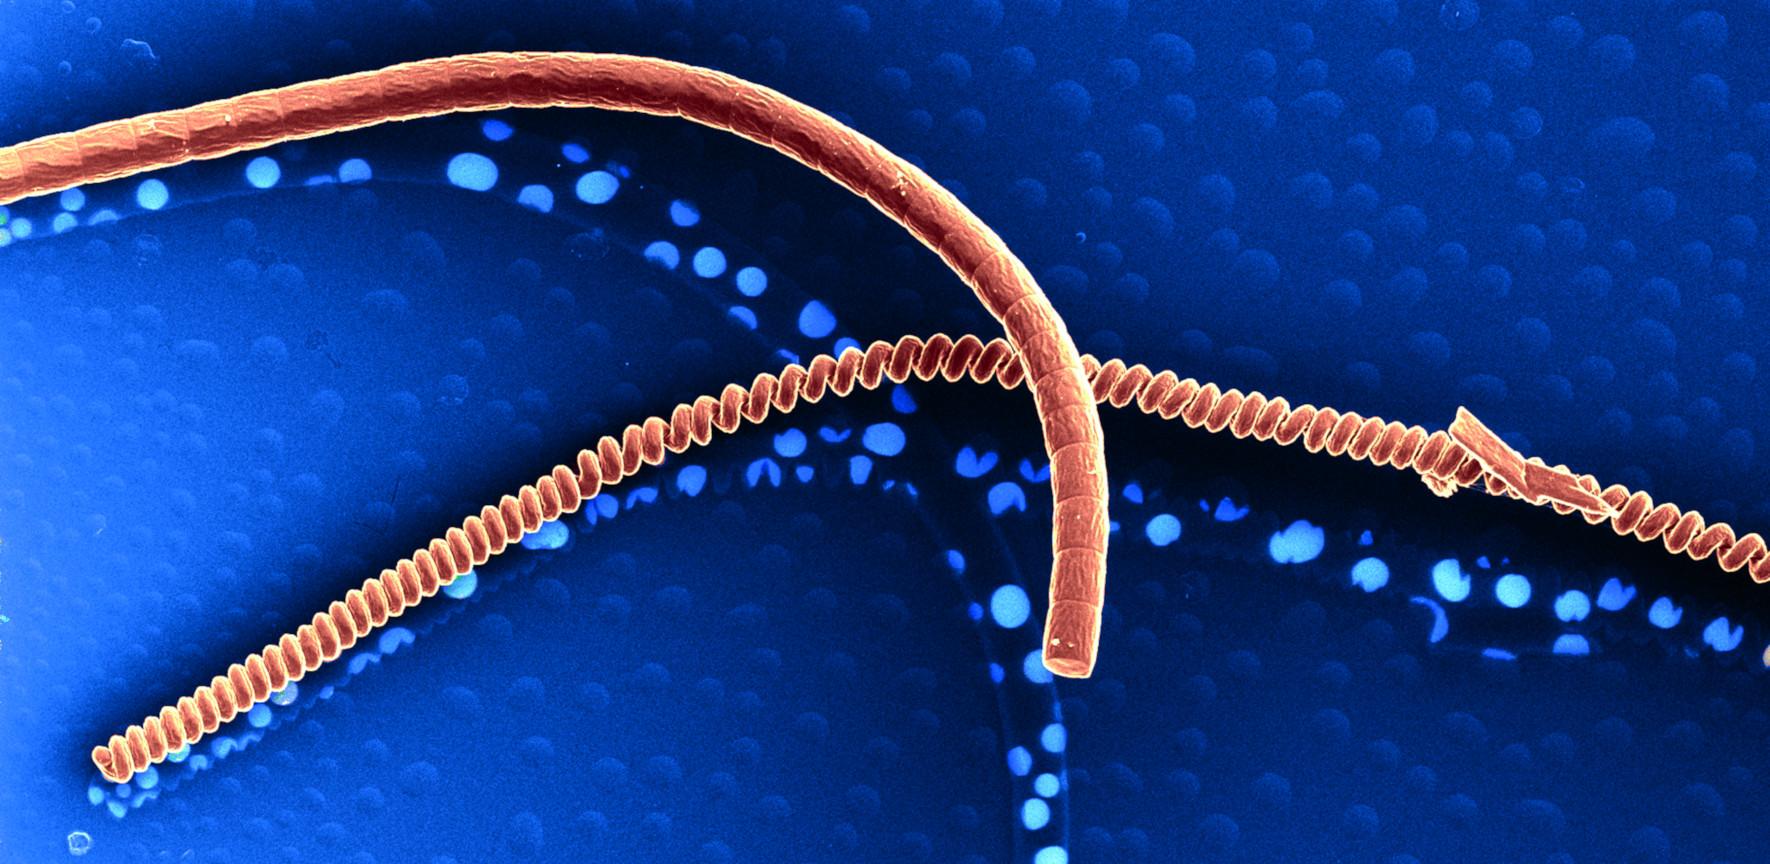 Orion NanoFab image of cyanobacteria at nanoscale